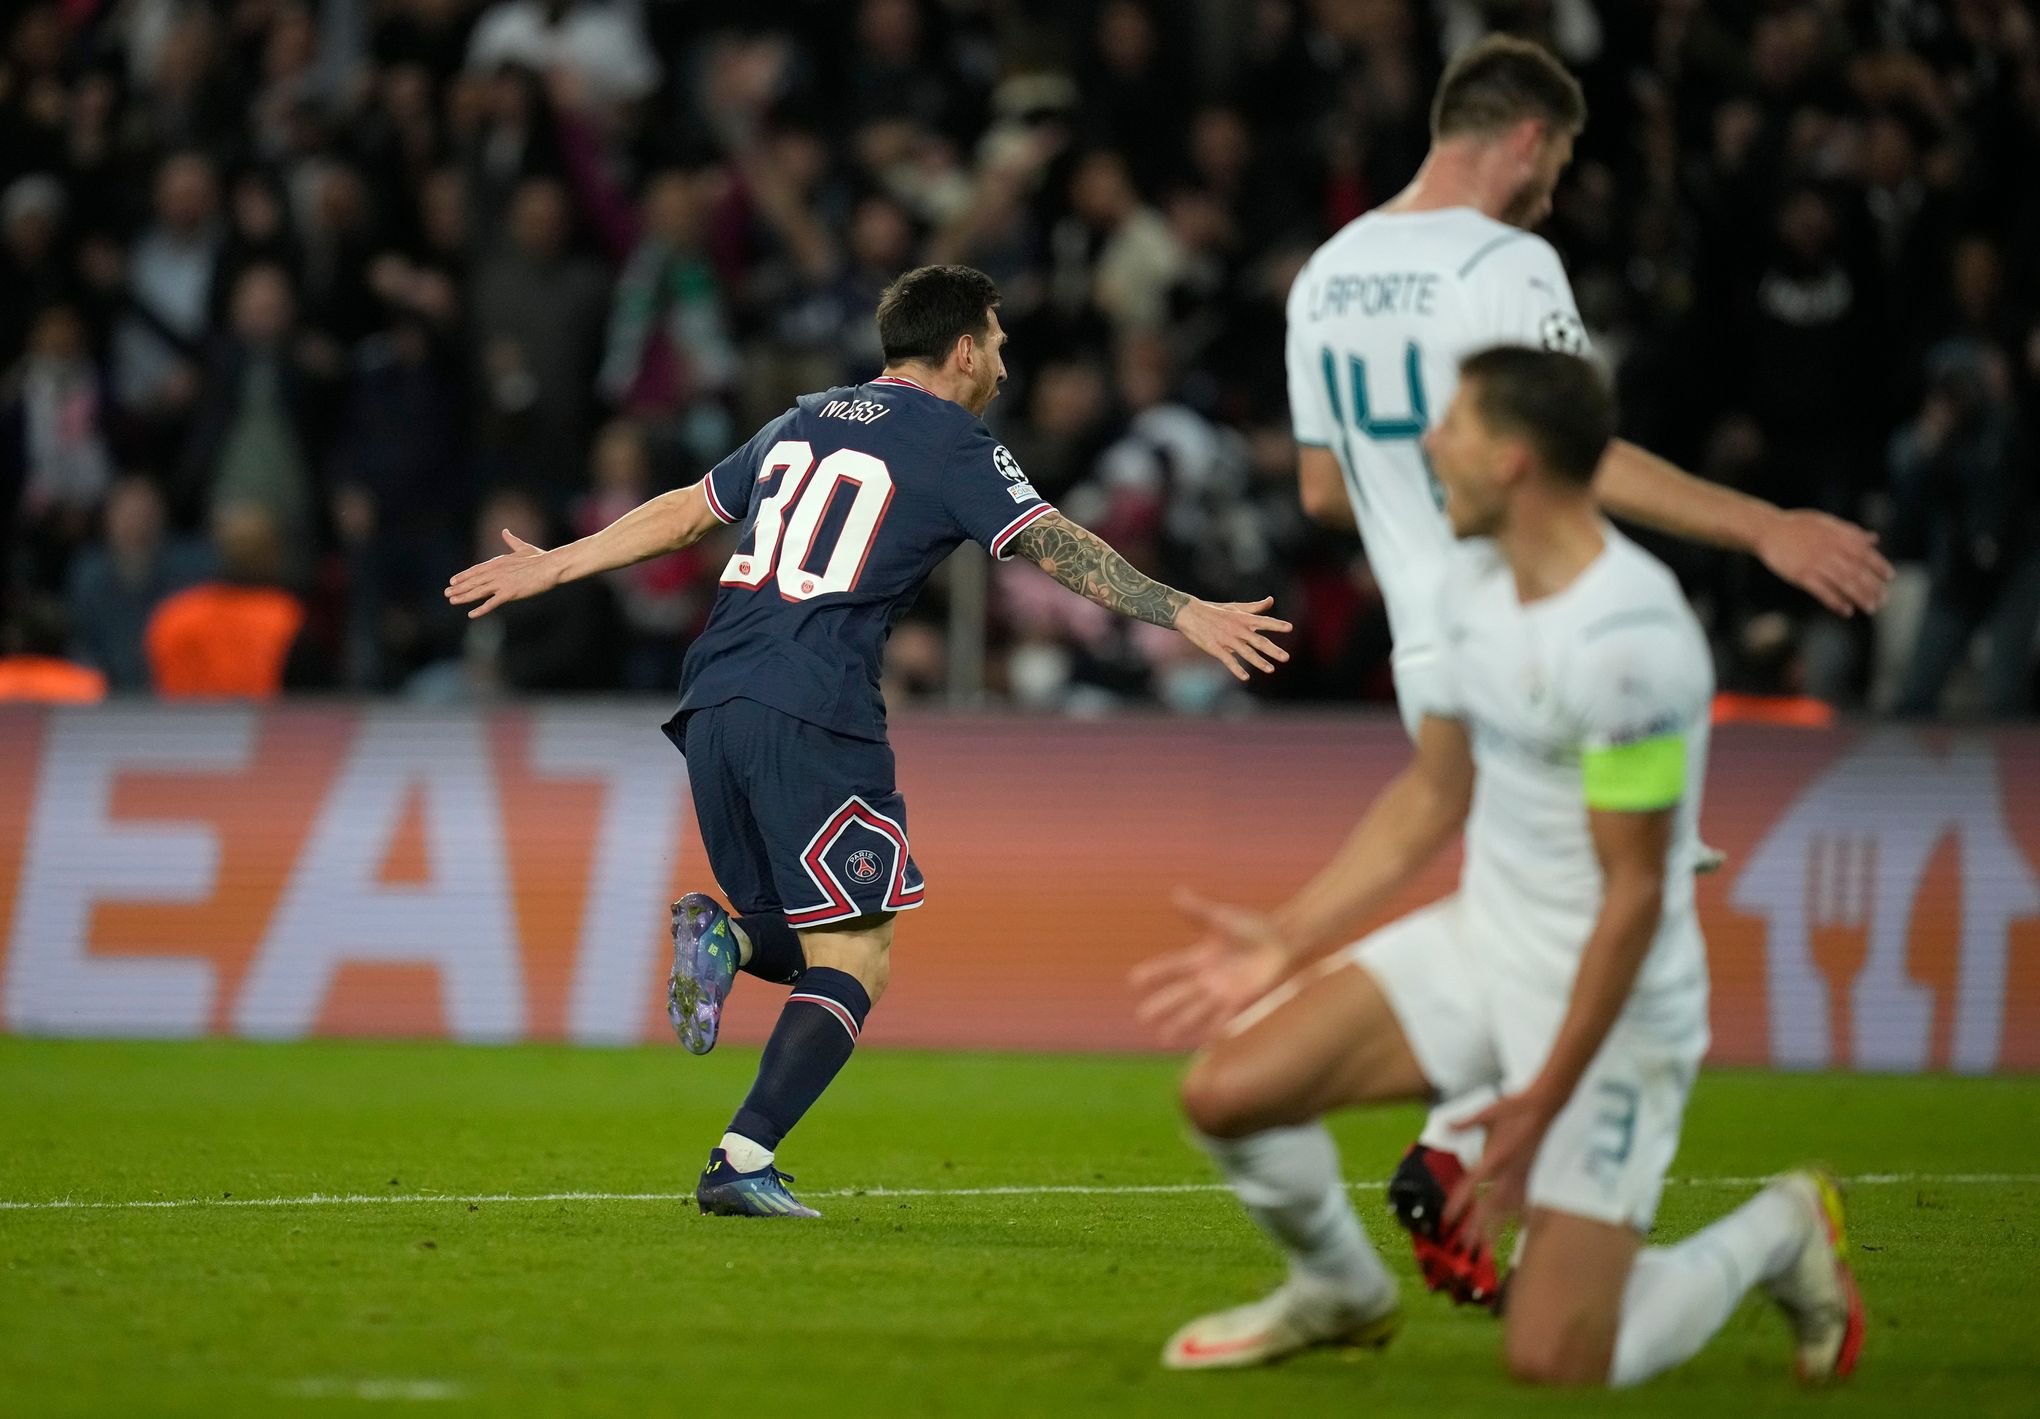 VIDÉOS. Football – Ligue 1. Messi, Neymar et Mbappé, trio magique